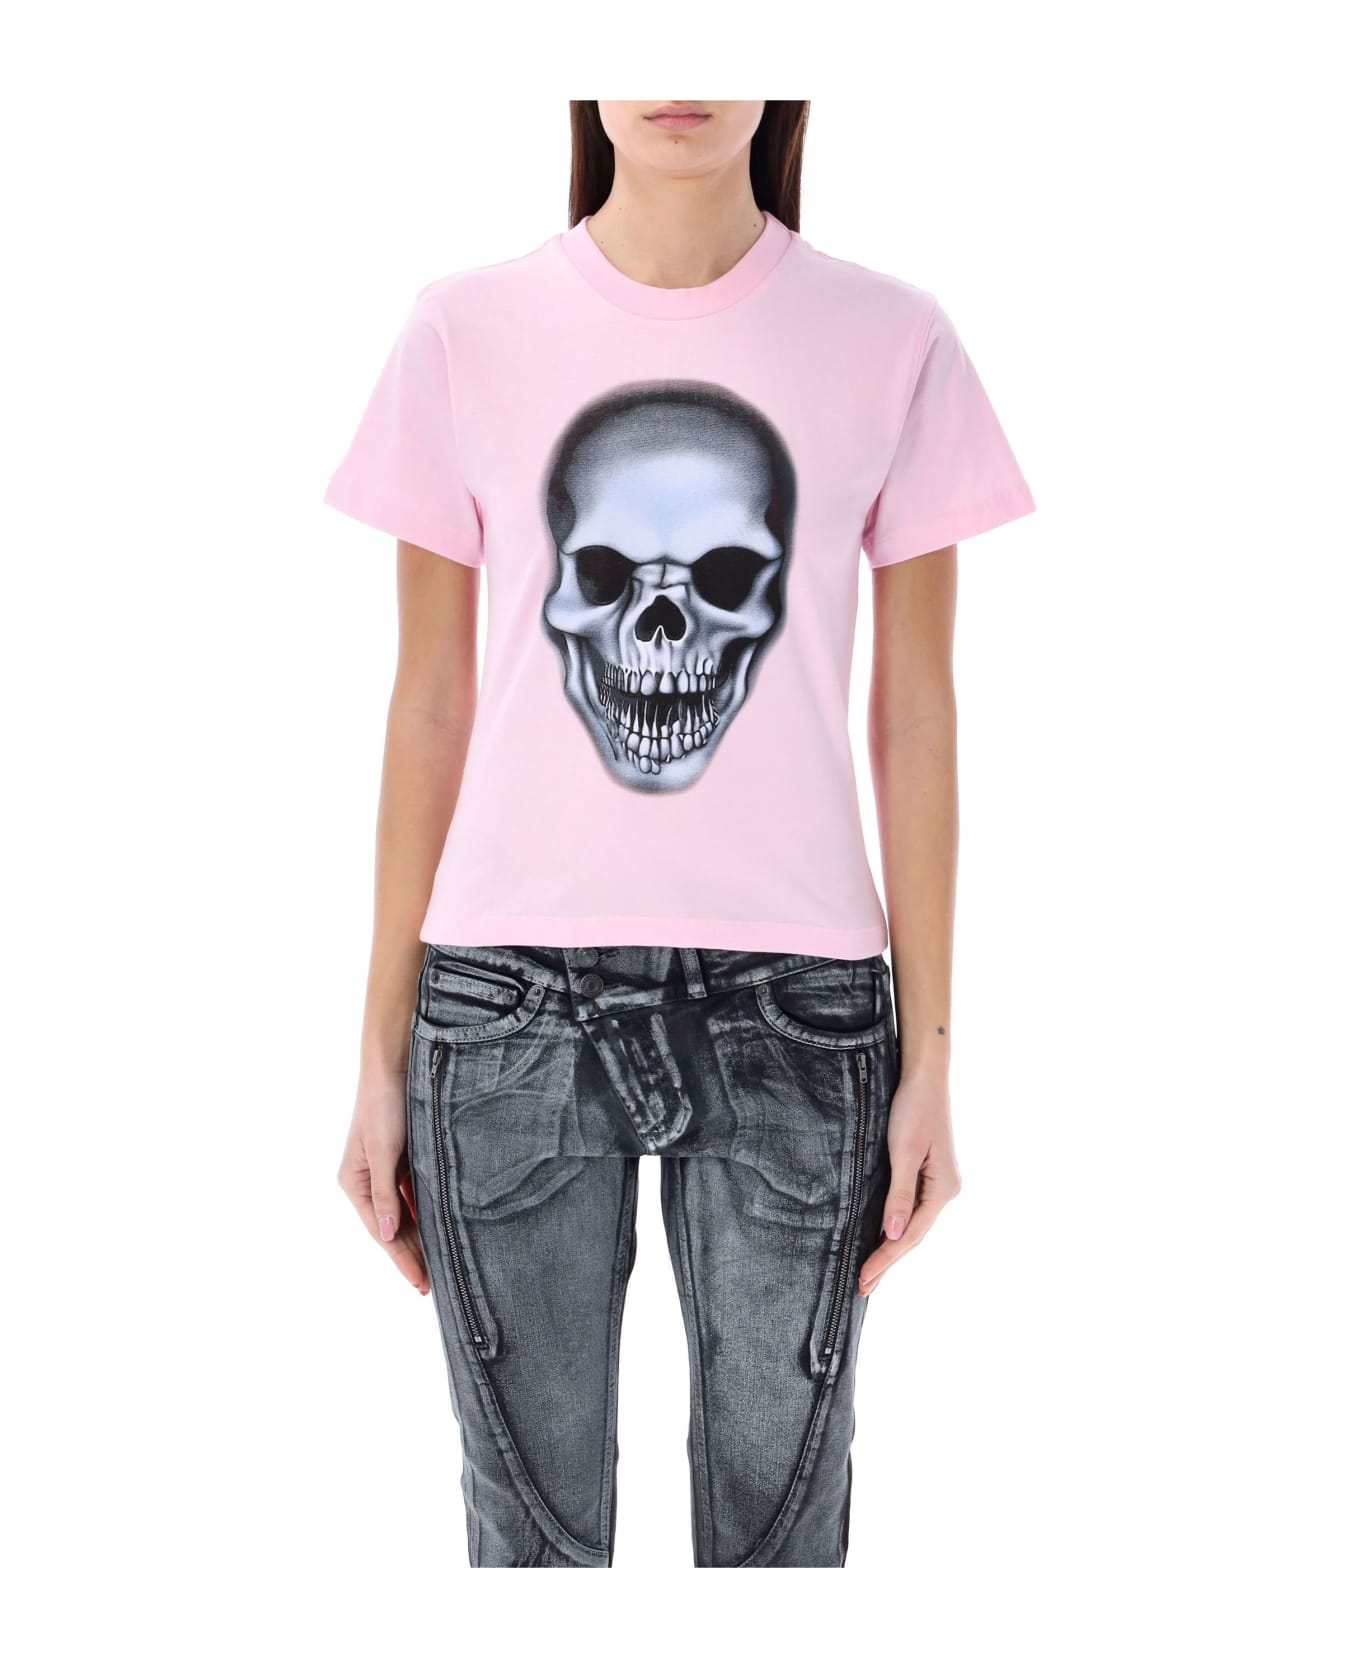 Ottolinger Skull T-shirt - LIGHT PINK